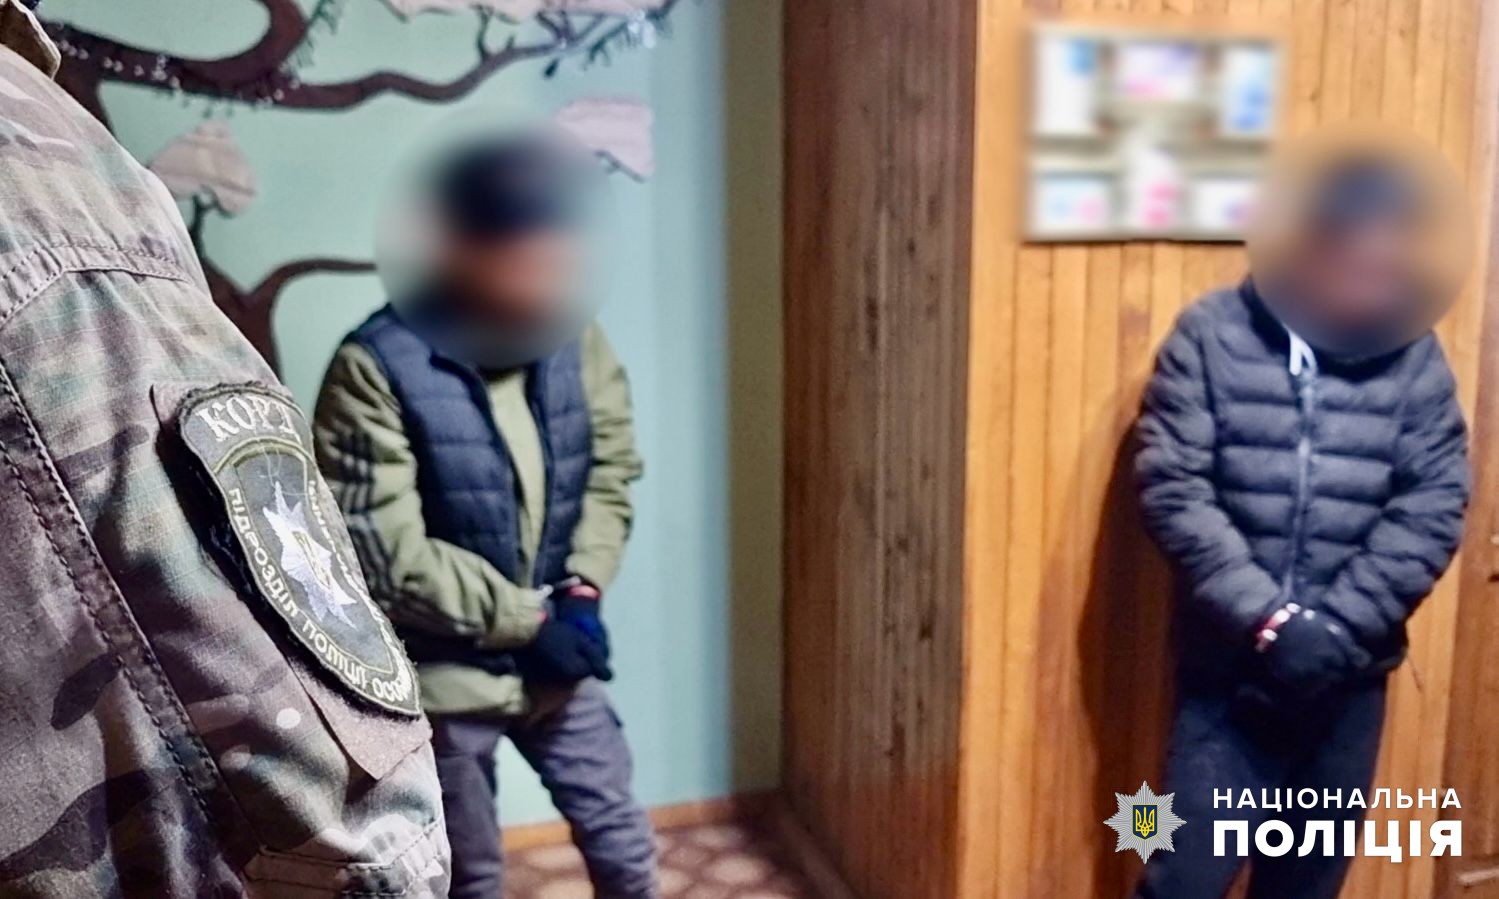 Группа иностранцев совершила разбойное нападение на предпринимателя в Одесской области: их «на горячем» задержали правоохранители